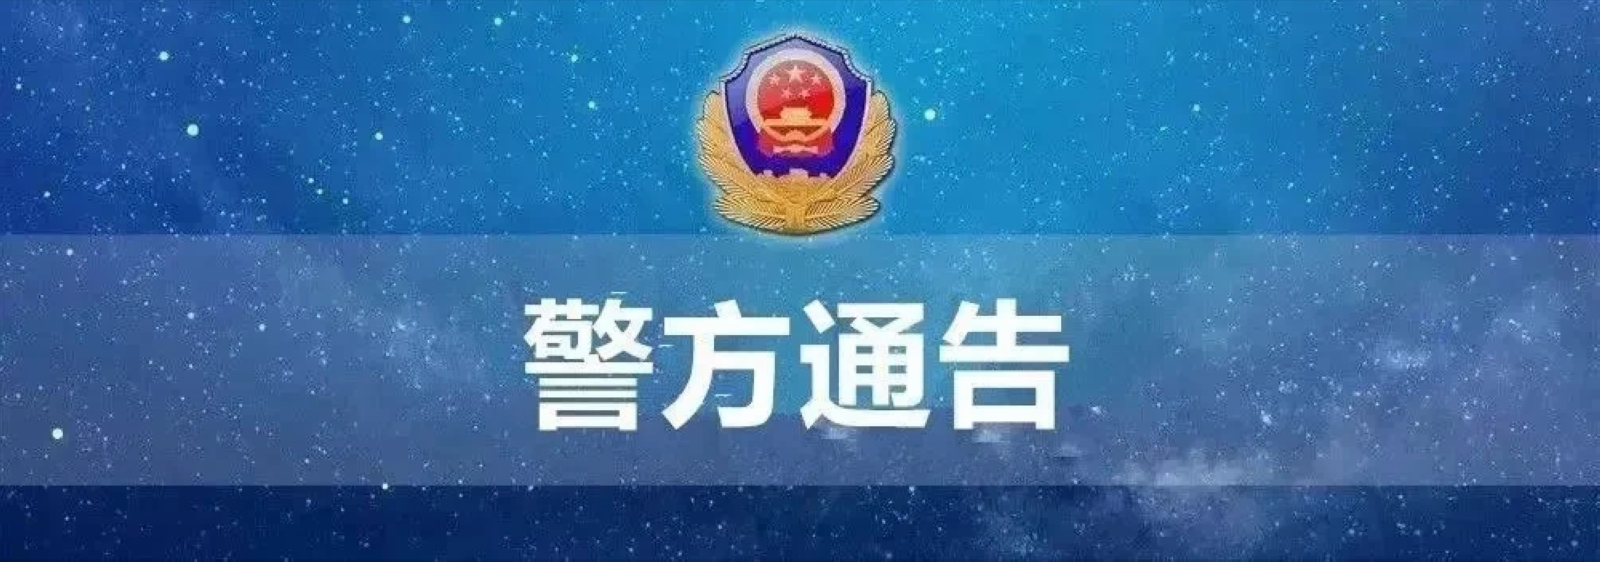 西安夜班招聘(西安市公安局招聘320名辅警)-深圳富士康正式工招聘